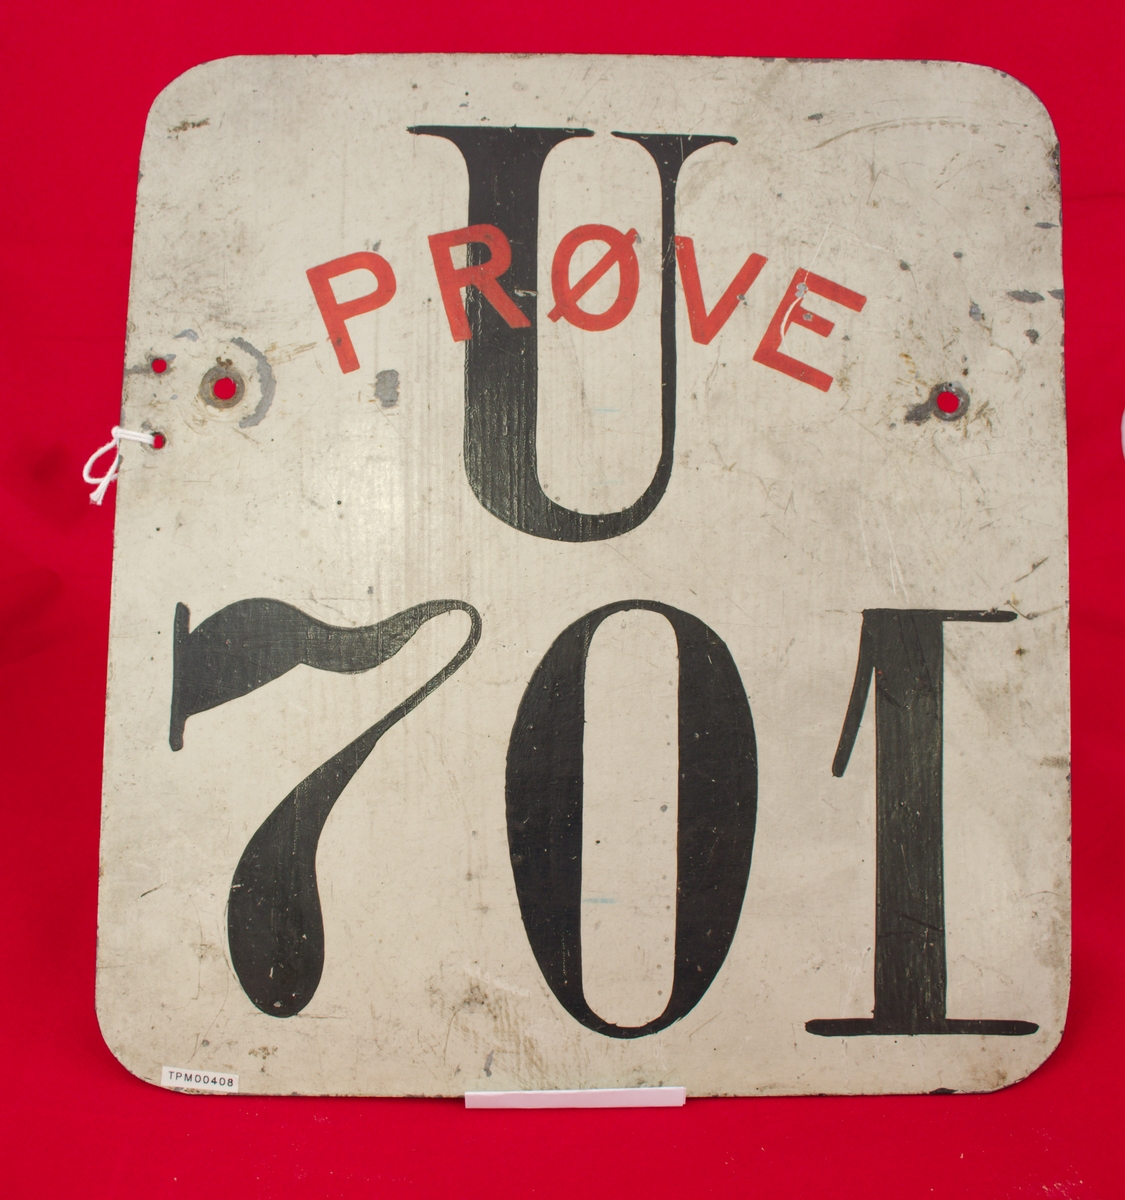 Stående rektangulært bilskilt i hvitt med nummer U 701 i sort og ordet "Prøve" med rød skrift.